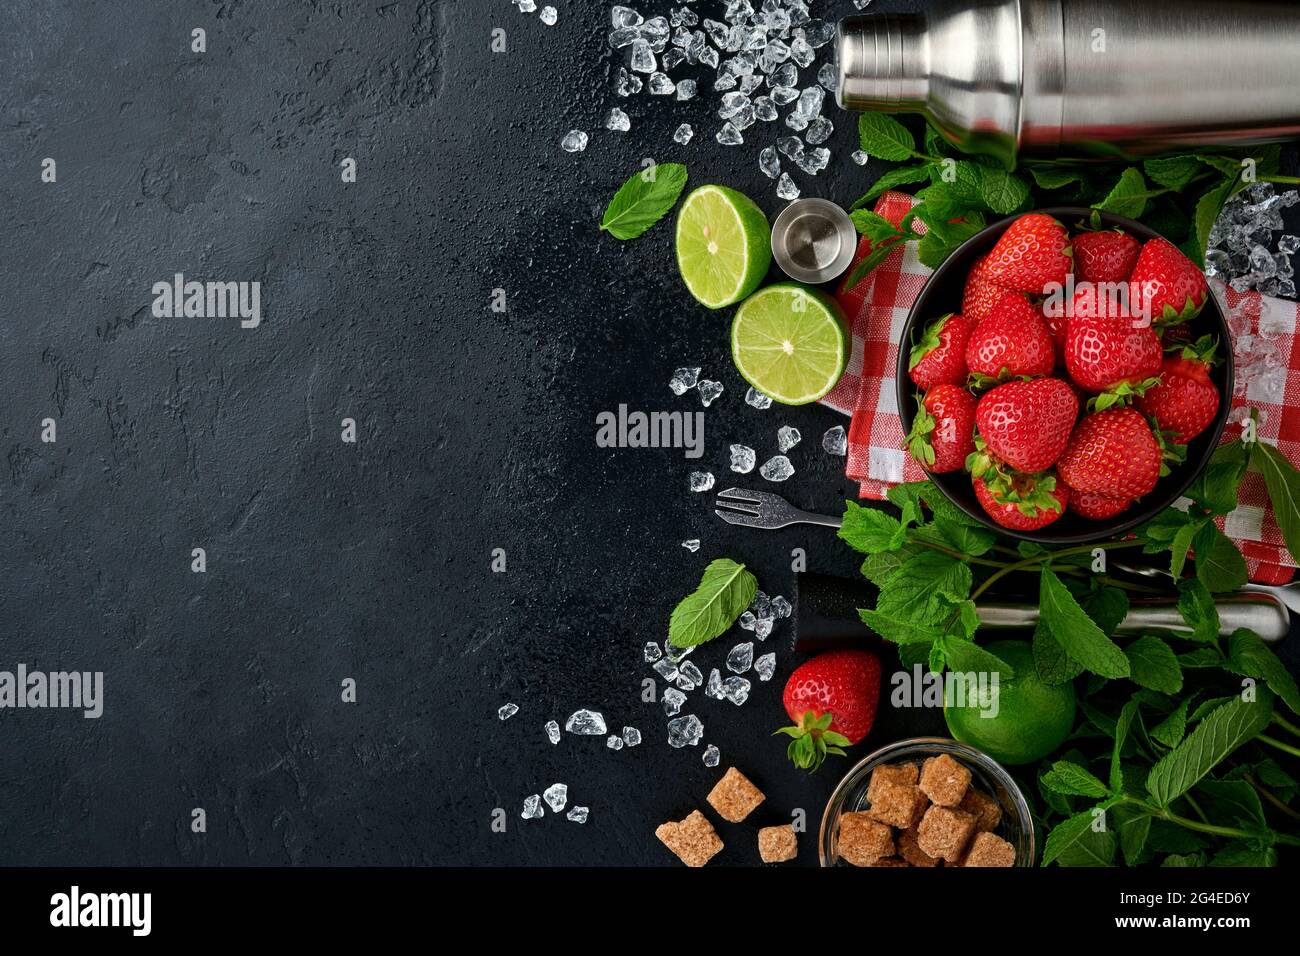 Lebensmittel Frische Zutaten für die Herstellung von Limonade, infundiert entgiftendes Wasser oder Cocktail. Erdbeeren, Limette, Minze, Basilikum, Rohrzucker, Eiswürfel und Shaker auf Blac Stockfoto